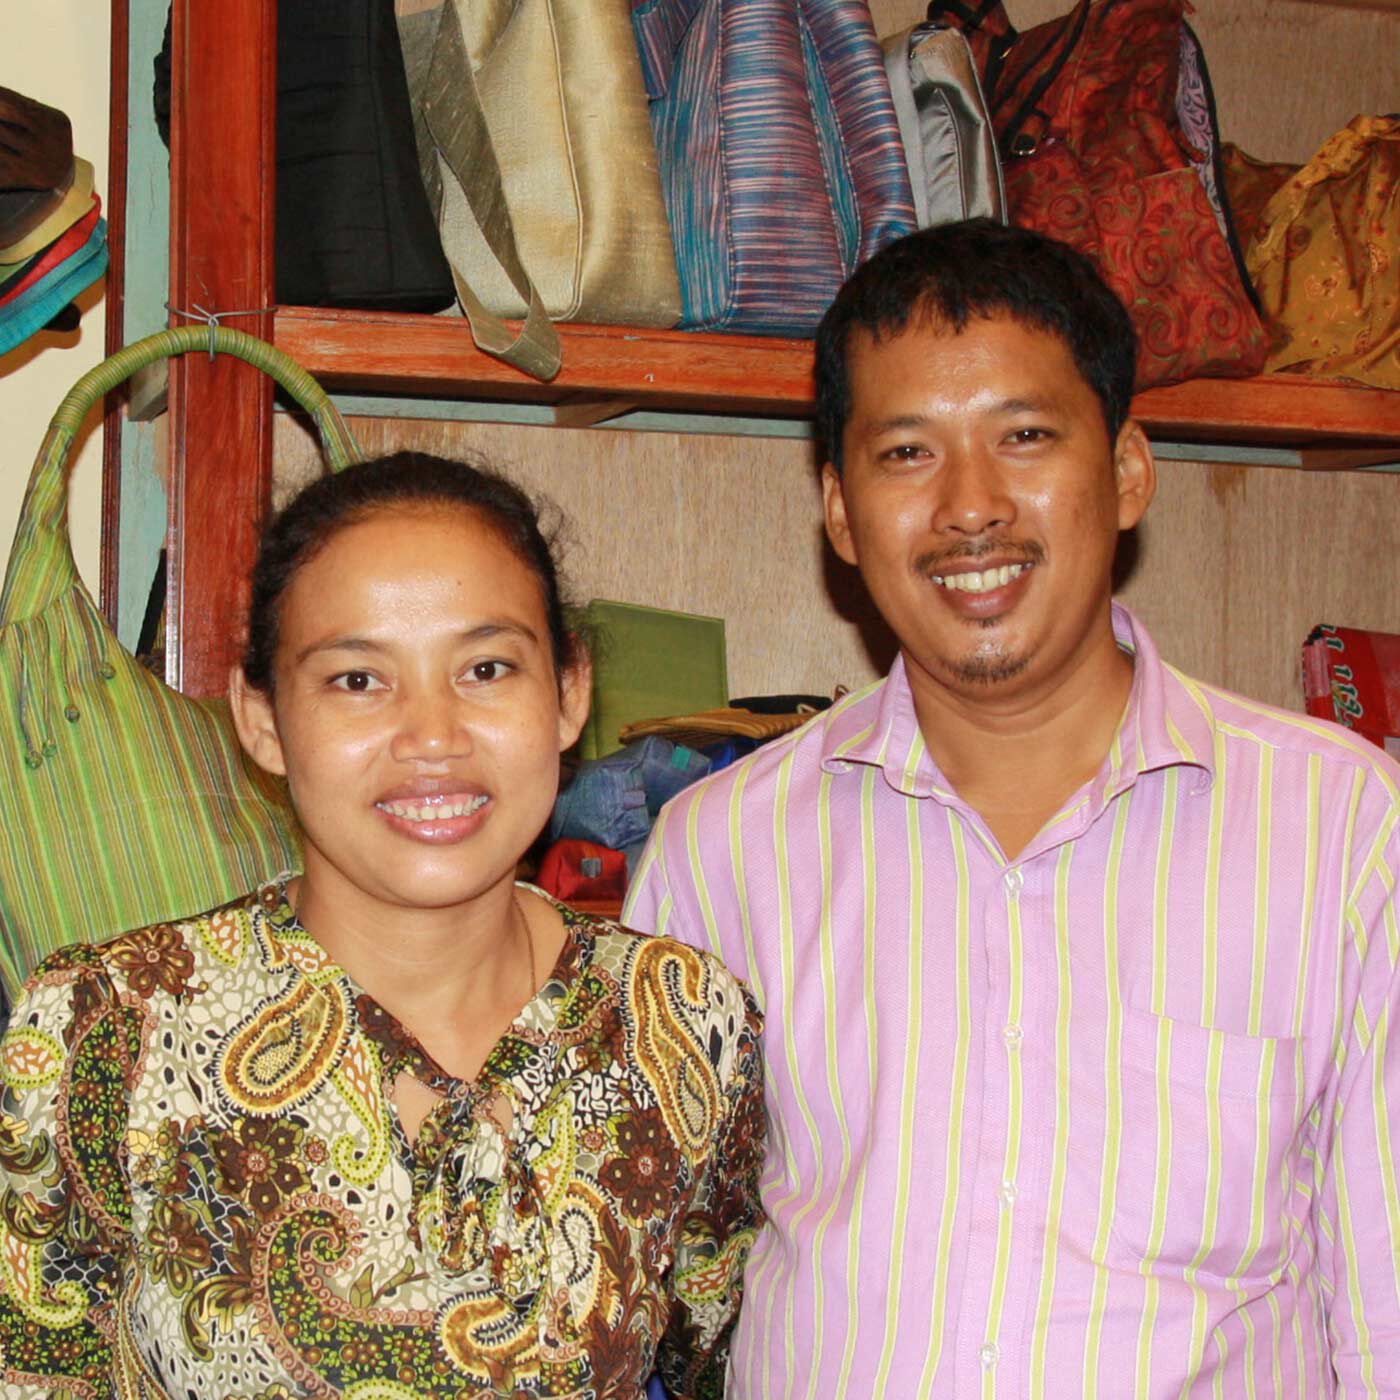 フェリシモの雑貨 Kraso|世界も自分も美しく　シルクのサンケネックレスの会|【Ta Prohm Silk　タプロムシルク】2003年にカンボジア人夫婦によってフェアトレードの理念をベースに設立されました。経営者夫婦は貧しい農村の出身ですが、モットーは「必要なのは寄付ではなく仕事」。妻のKongさんは12歳の時に地雷により右足を失いましたが、いつも元気でとてもパワフル。夫のSamさんはマーケティングや営業などを担当。役割分担しながら二人三脚で運営しています。彼らは、自分たちと同じように障がいを持っていたり、きびしい環境に生きる多くのカンボジア人を積極的に雇用し、縫製や生産の技術を伝え、仕事を提供することで世界へ商品を届けています。